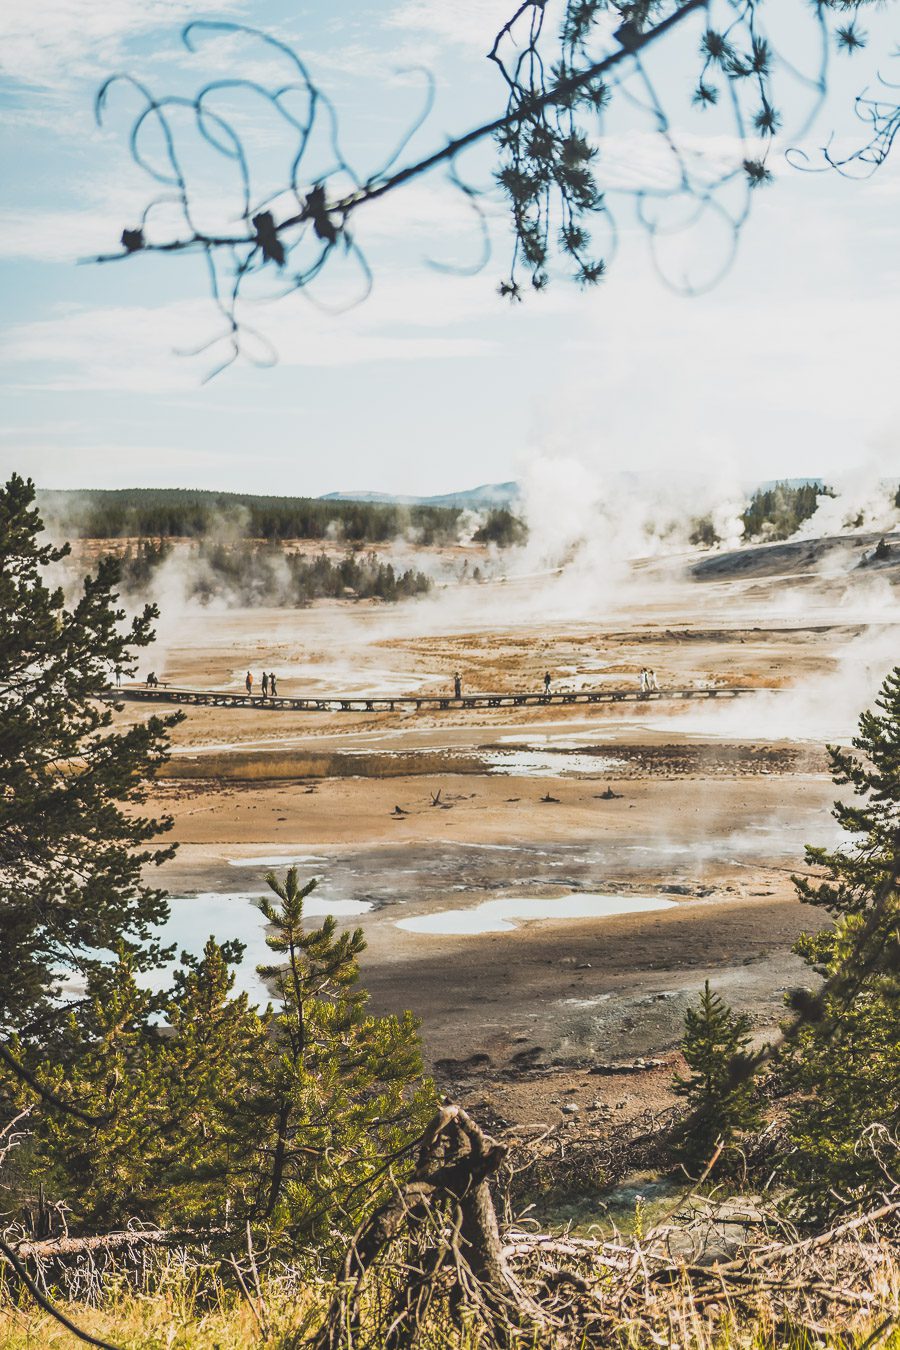 Situé aux États-Unis, le parc national de Yellowstone est l'une des destinations les plus impressionnantes et pittoresques au monde. Visiter Yellowstone, c’est découvrir des paysages époustouflants, allant des forêts, des geysers et des sources chaudes aux canyons et aux vastes prairies ouvertes, Yellowstone est vraiment un endroit pas comme les autres. Des incroyables opportunités d'observation de la faune aux randonnées, il y a quelque chose pour tous dans le parc national de Yellowstone.